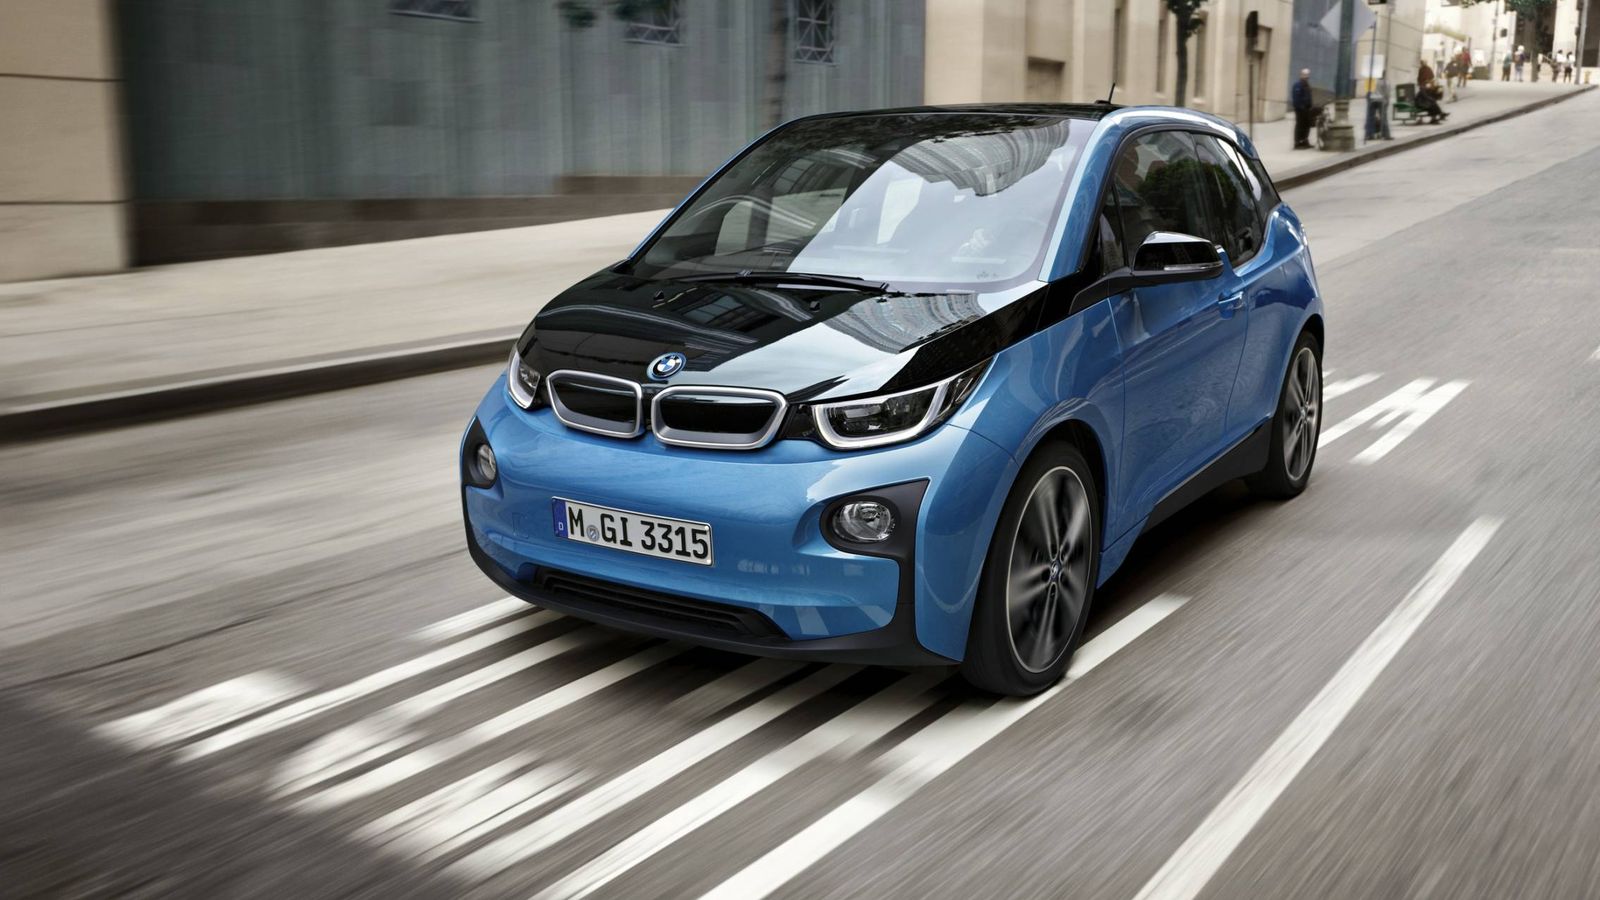 Foto: Más autonomía para el BMW i3 eléctrico